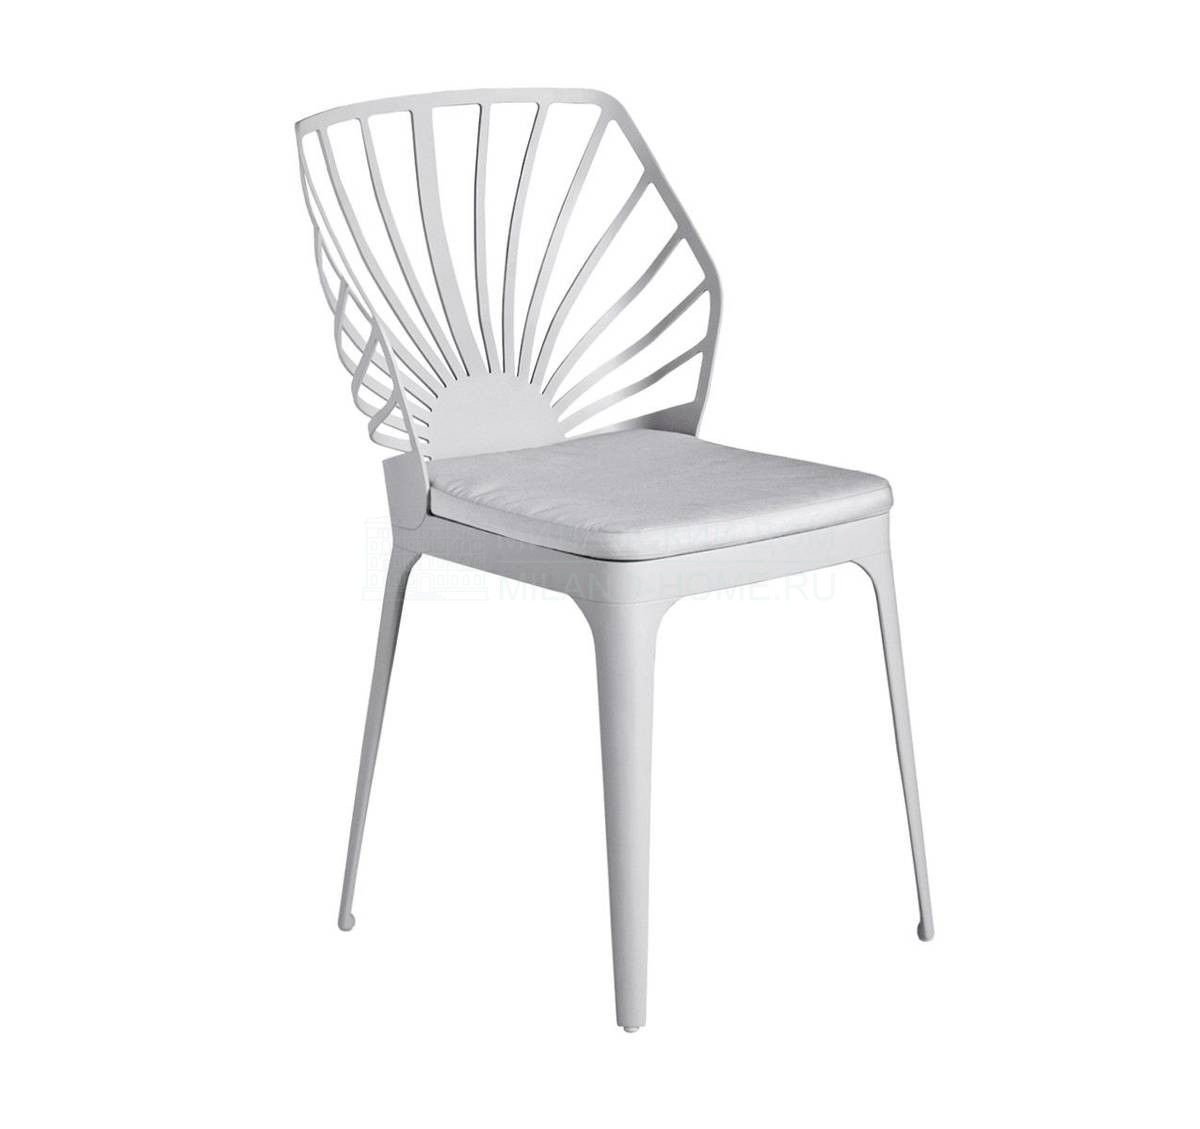 Стул Sunrise chair из Италии фабрики DRIADE